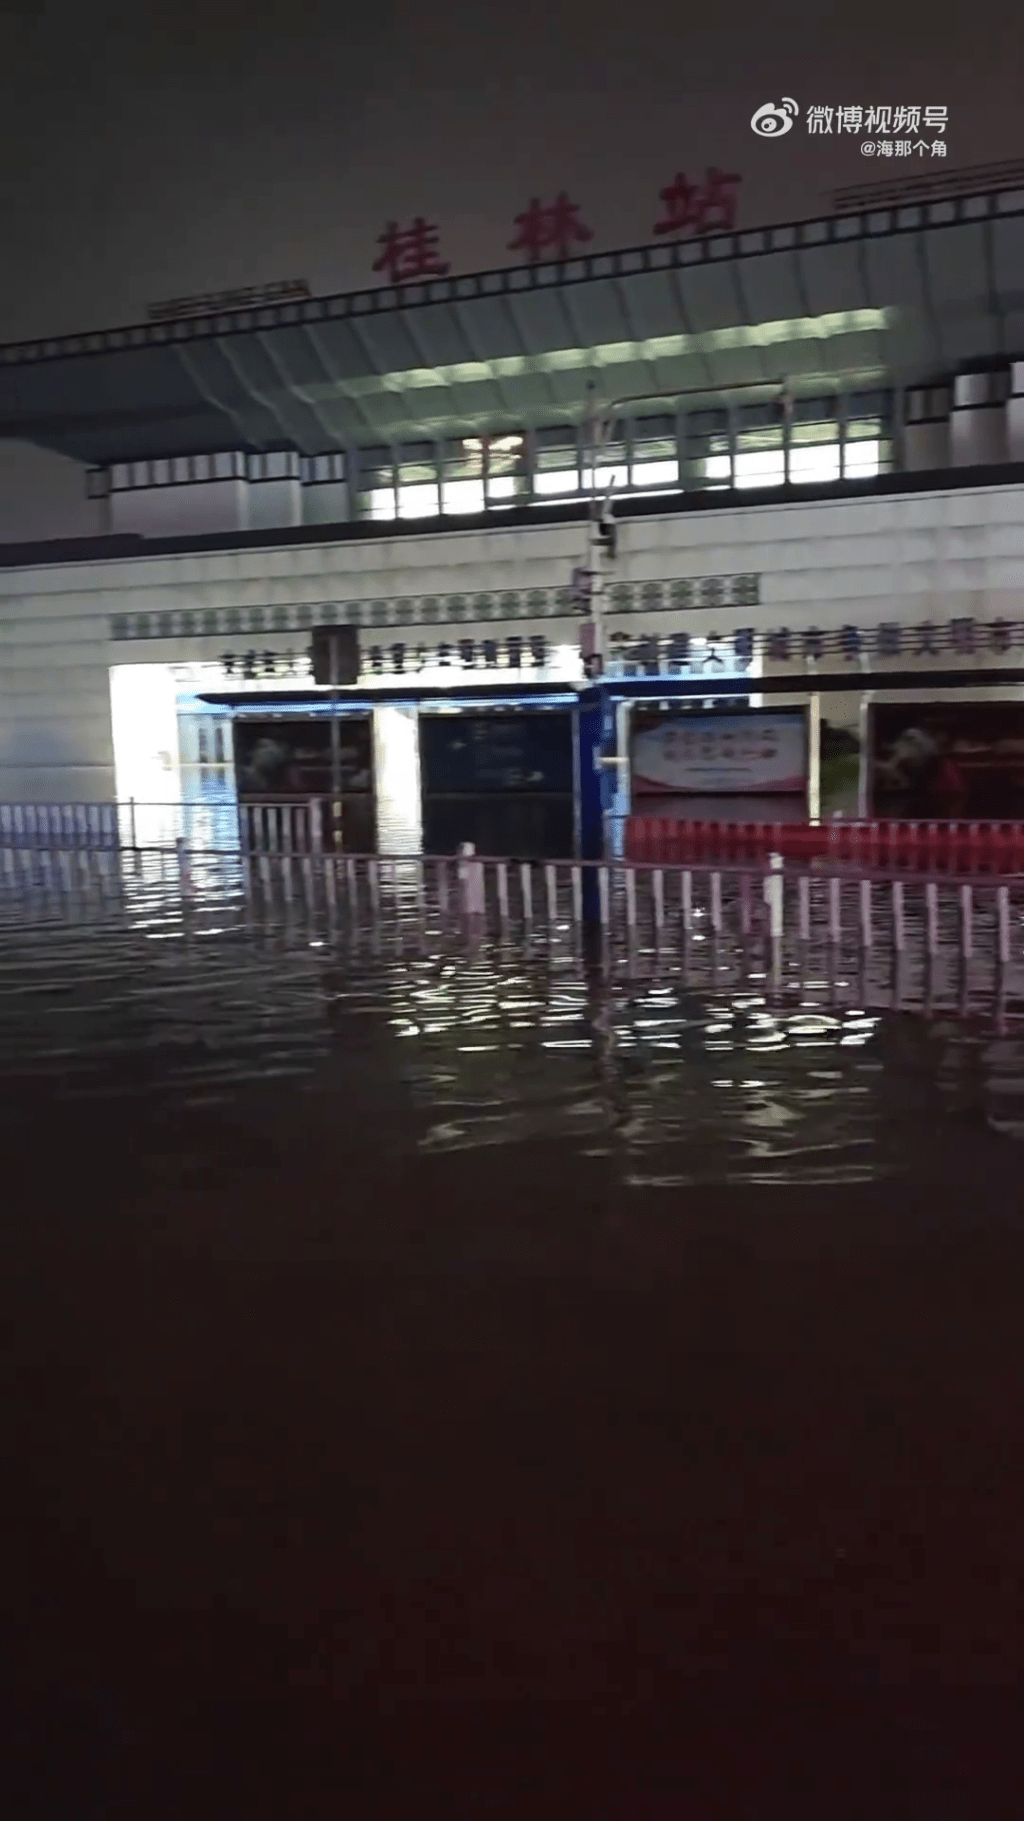 桂林火车站被淹。 微博